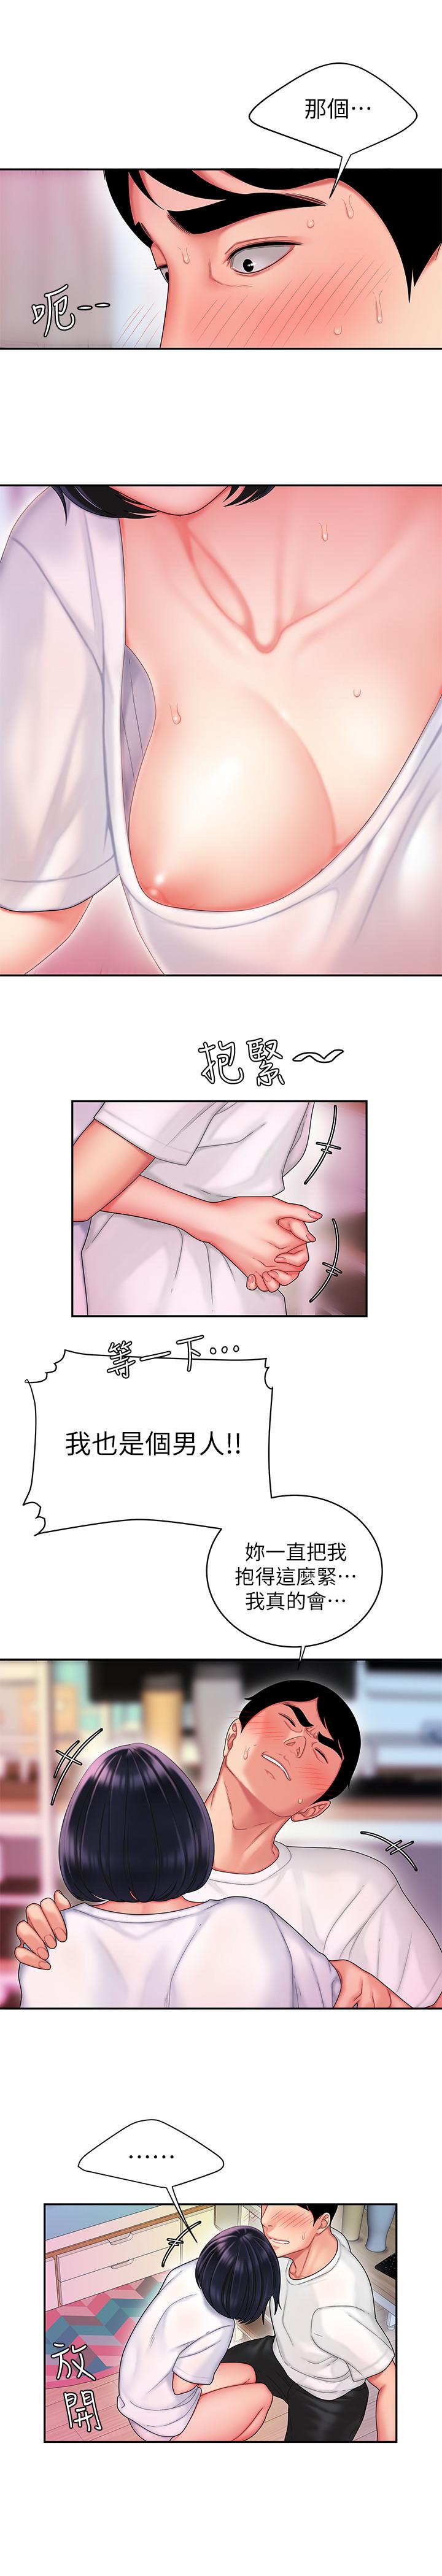 韩国污漫画 幸福外送員 第19话-让人变得愉悦的胸部 24